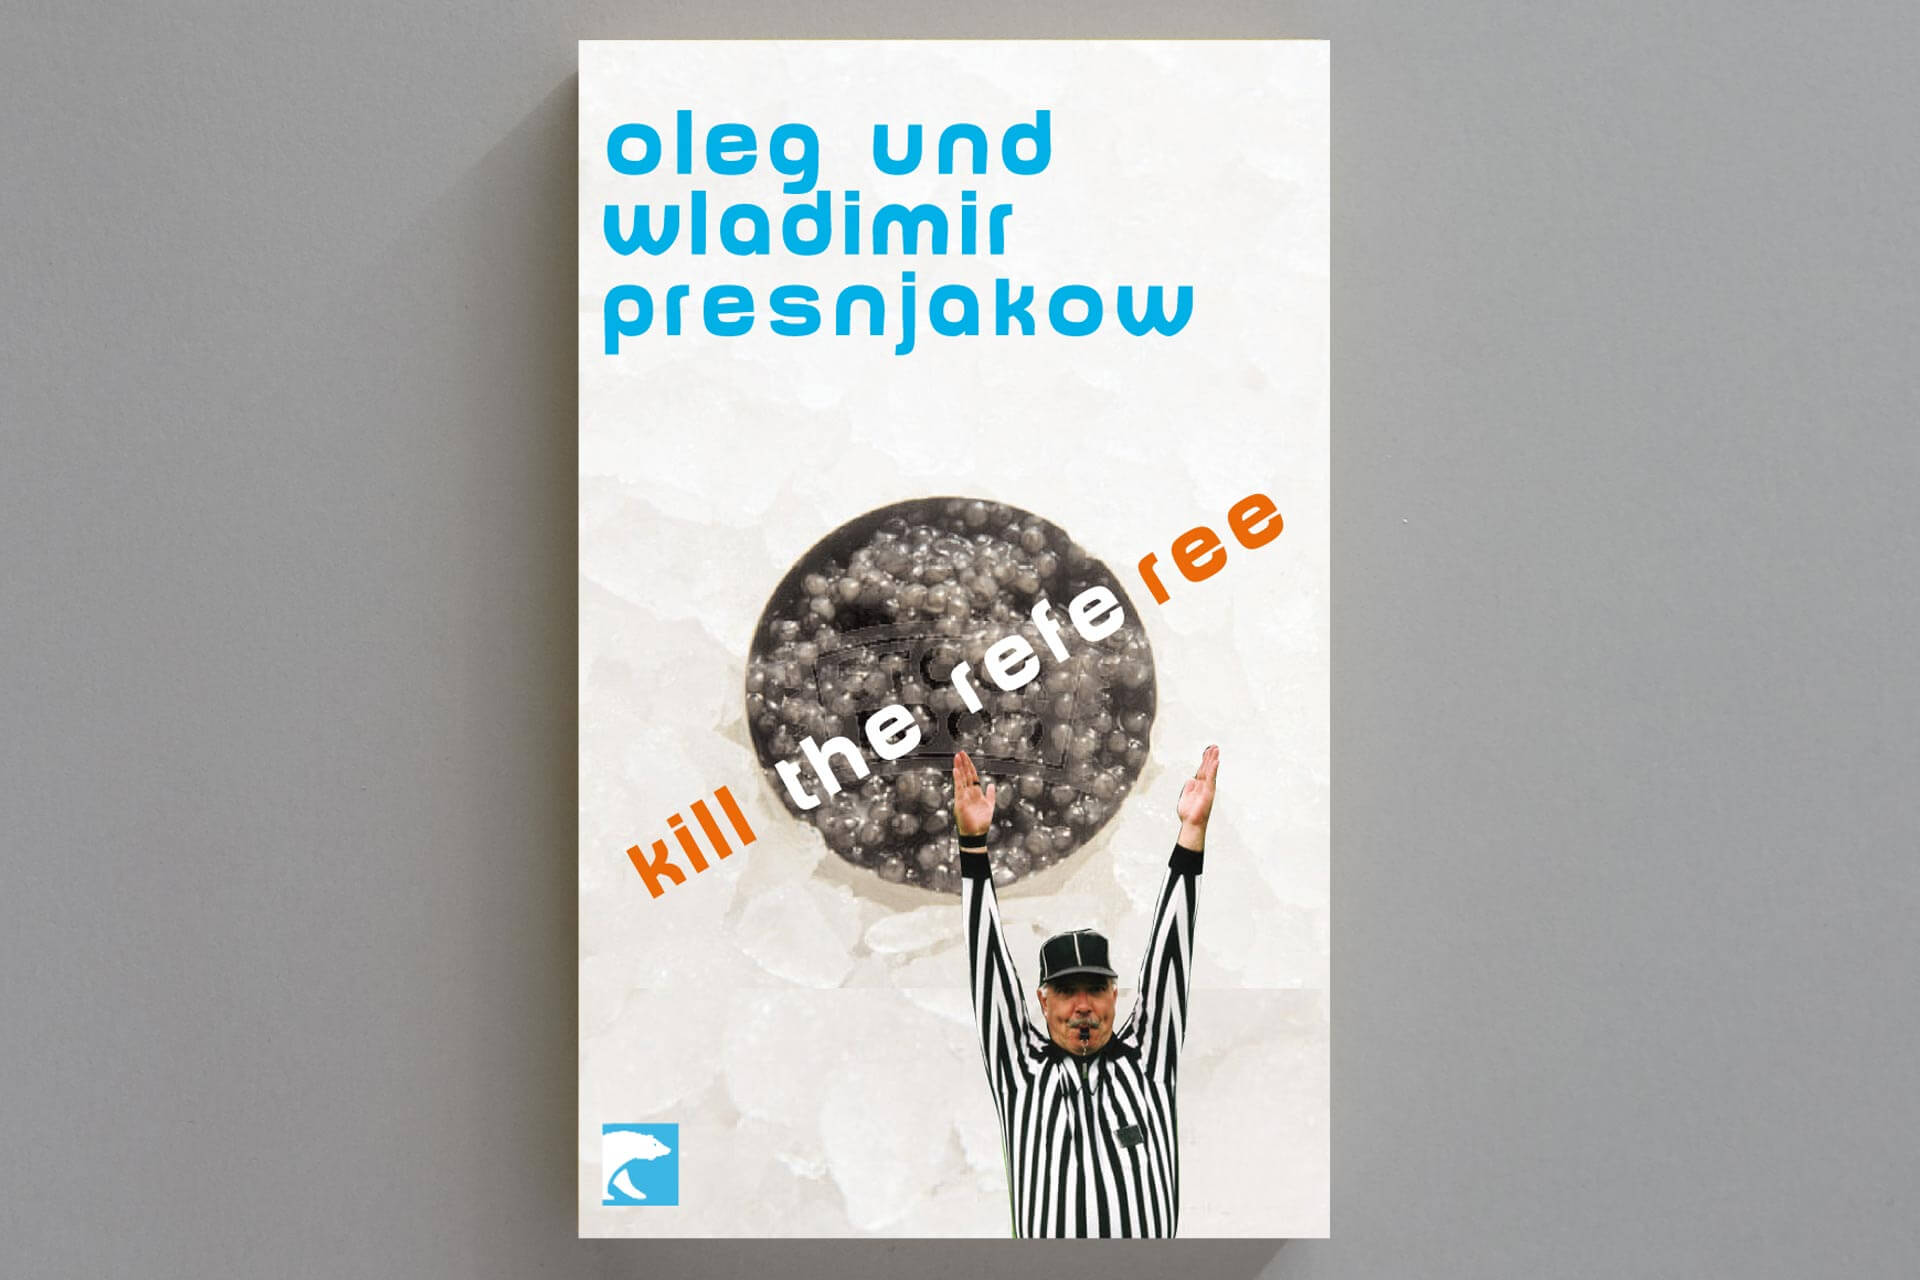 Abbildung einer Buchcover-Gestaltung für das Buch „Kill the Referee“ von Presnjakow. Motiv: Kaviardose